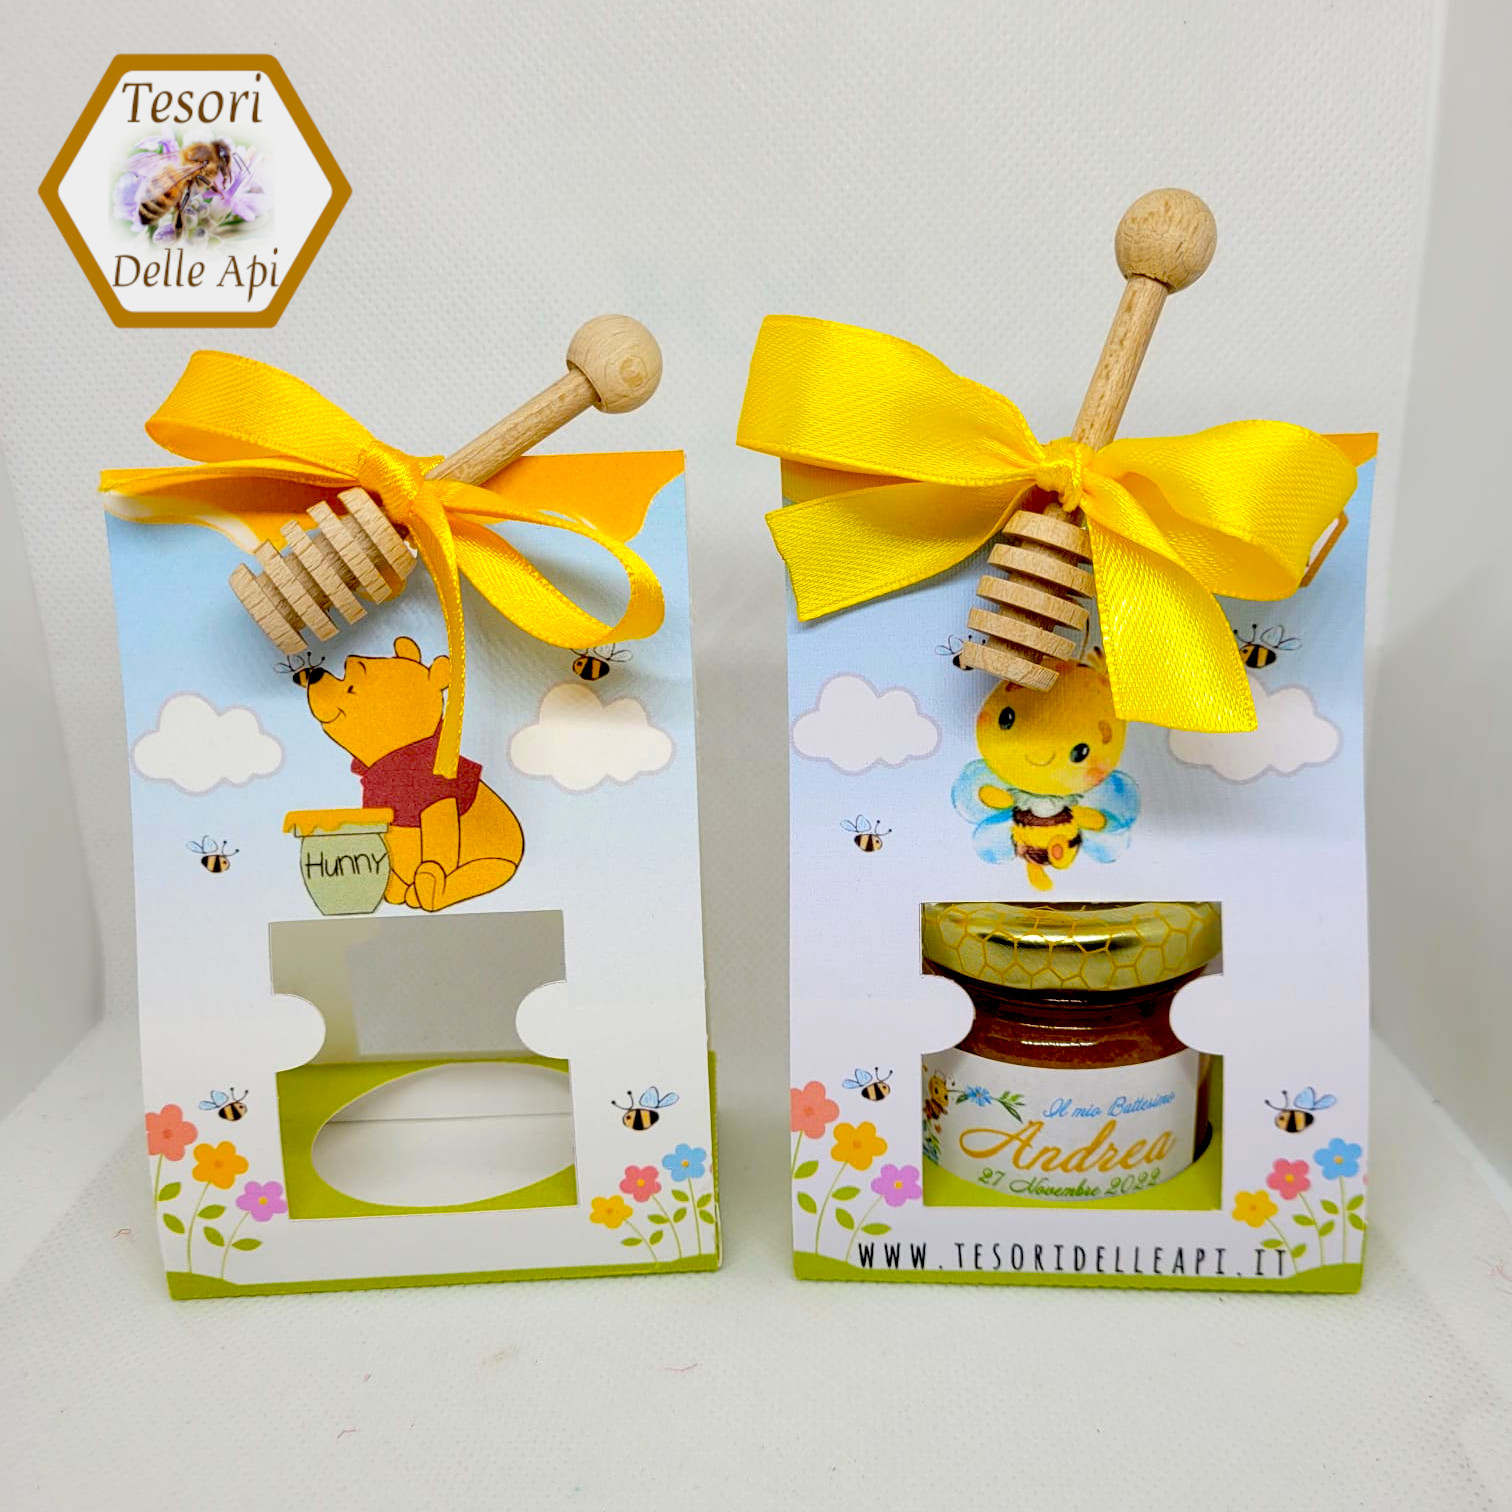 Bomboniera miele con spargimiele LILT confezionata - Living&Shop